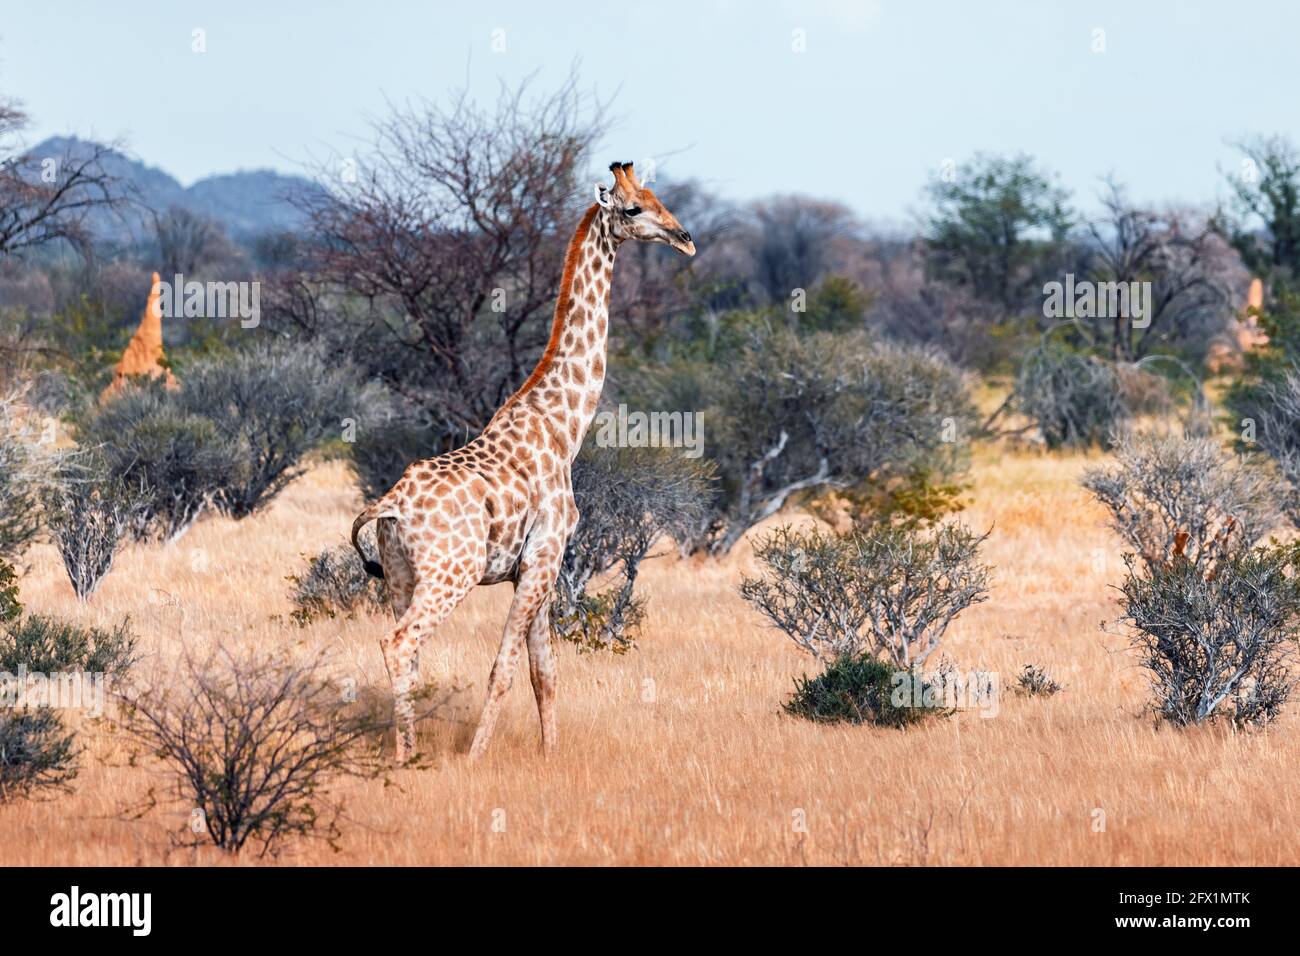 Giraffa giovane che cammina nel bush africano nel Parco Nazionale di Etosha, Namibia, Africa. Fotografia di fauna selvatica Foto Stock